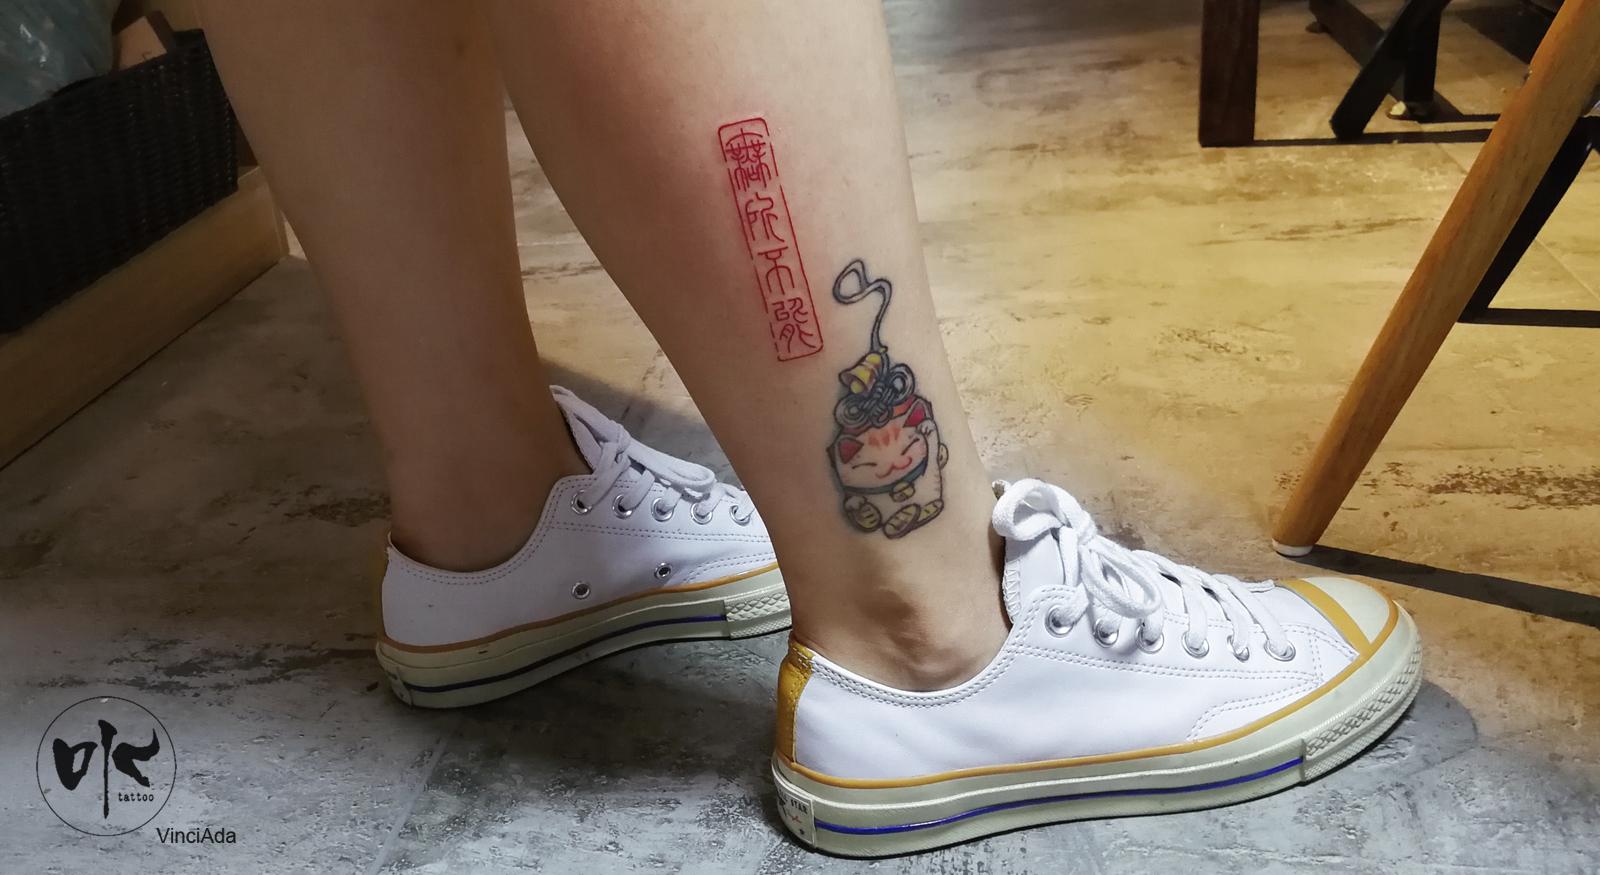 印章纹身,纹身扭蛋机,原创设计,北京纹身,tattoo